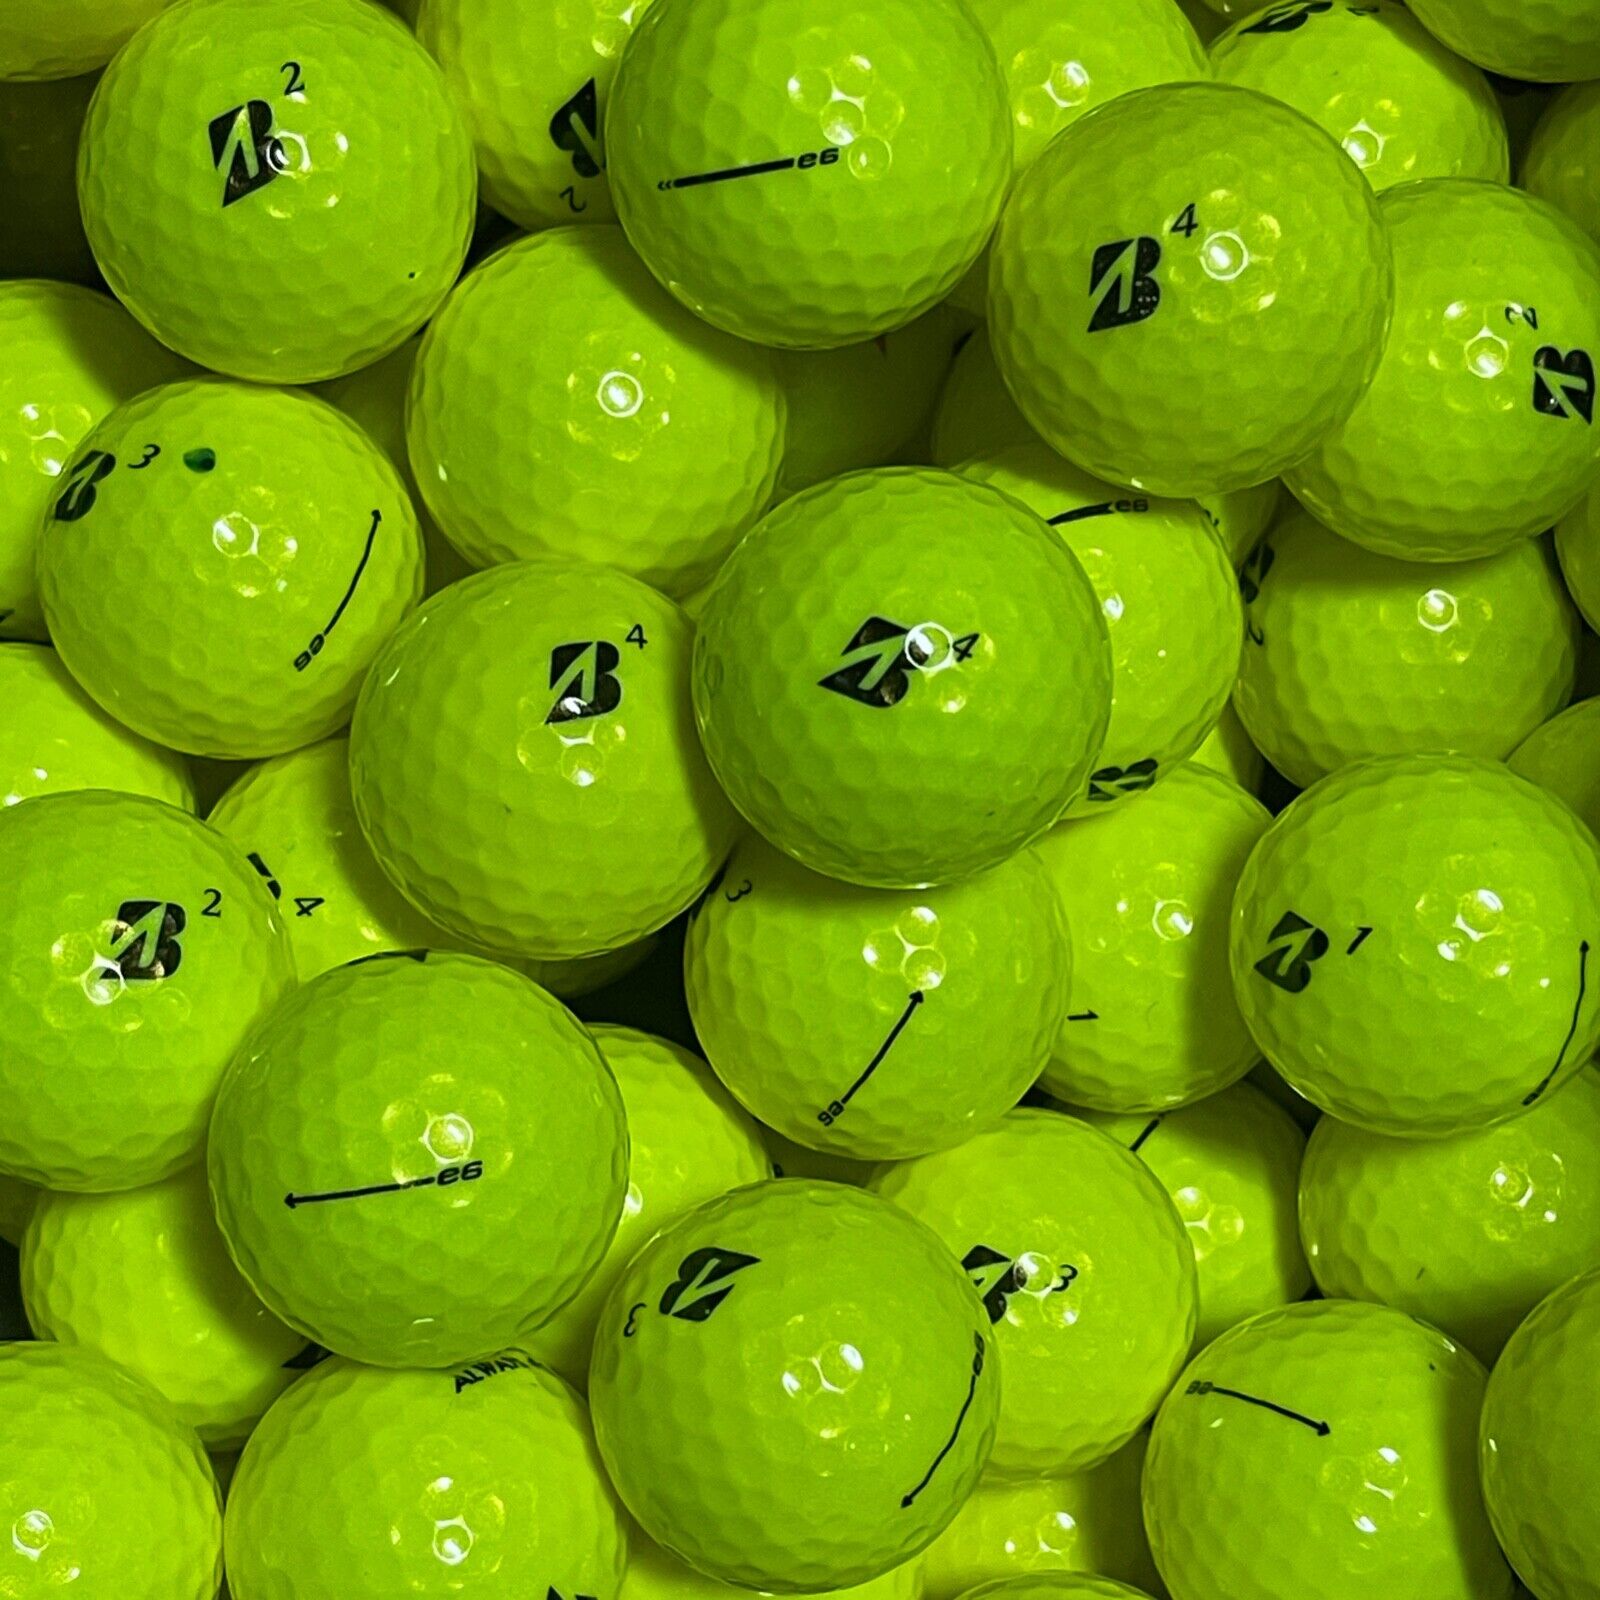 12 Bridgestone e6 Yellow 4A / 5A Used Golf Balls Grade AAAA / AAAAA